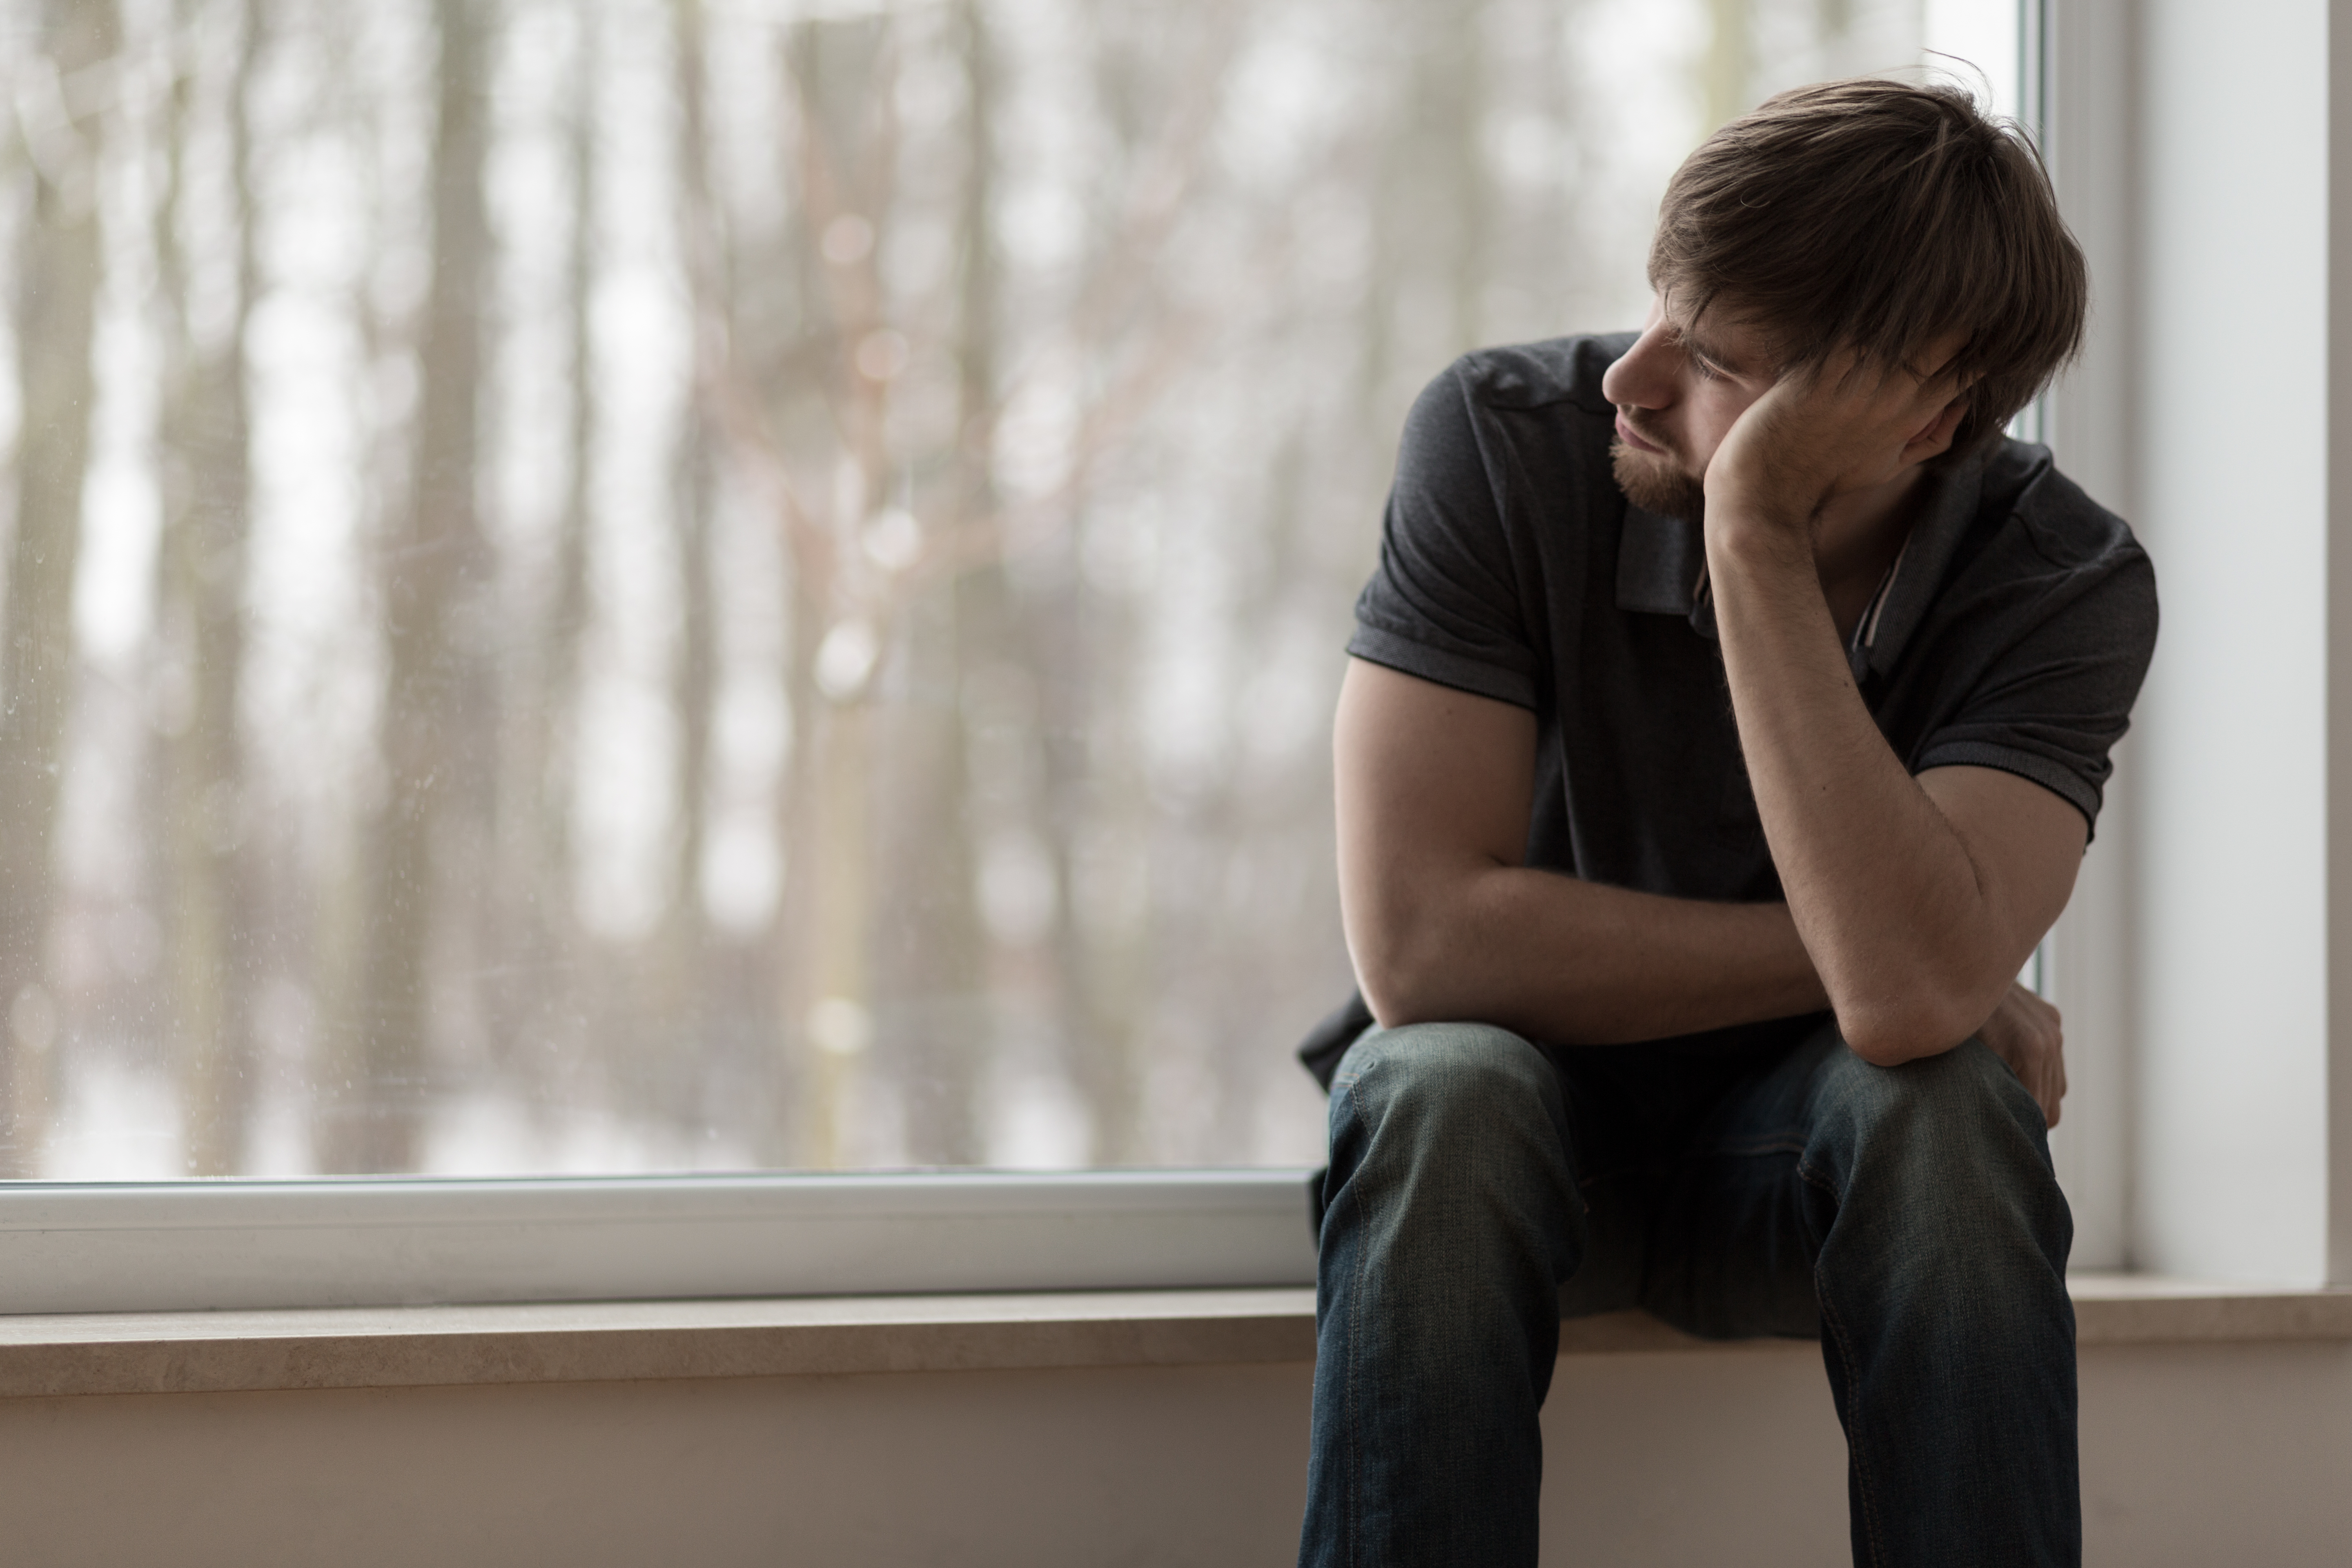 Joven miserable deprimido | Fuente: Shutterstock